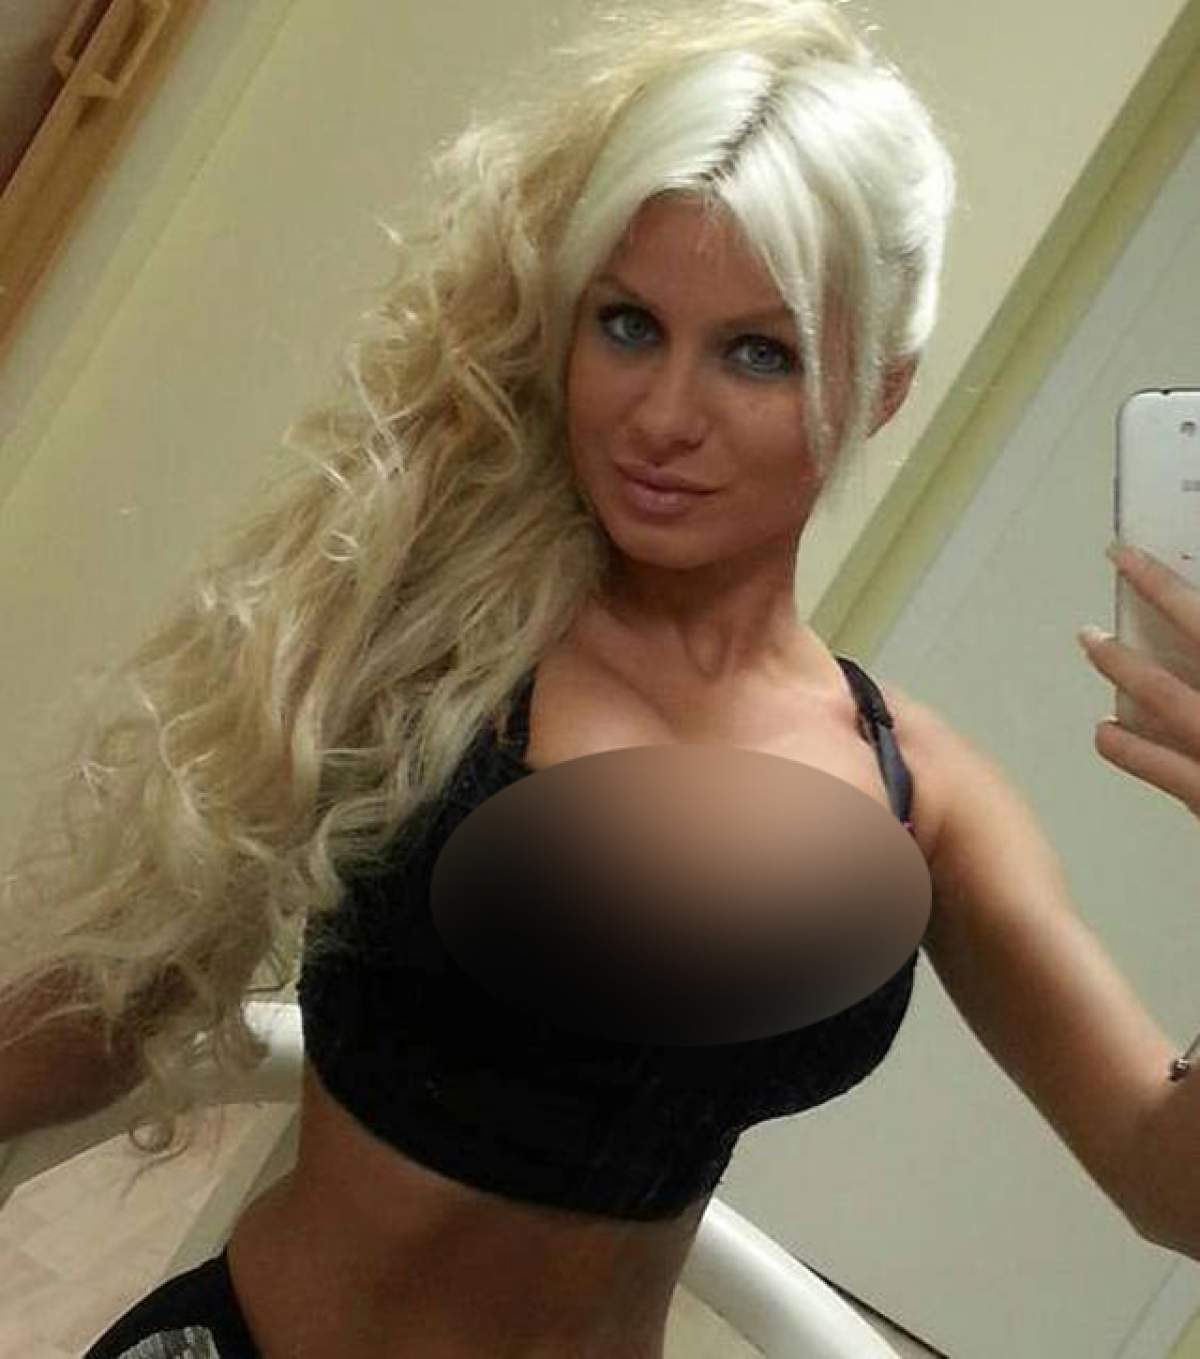 "Viespea" arată tot! Blonda apare pe site-urile de socializare cu sfârcurile şi cu... la vedere